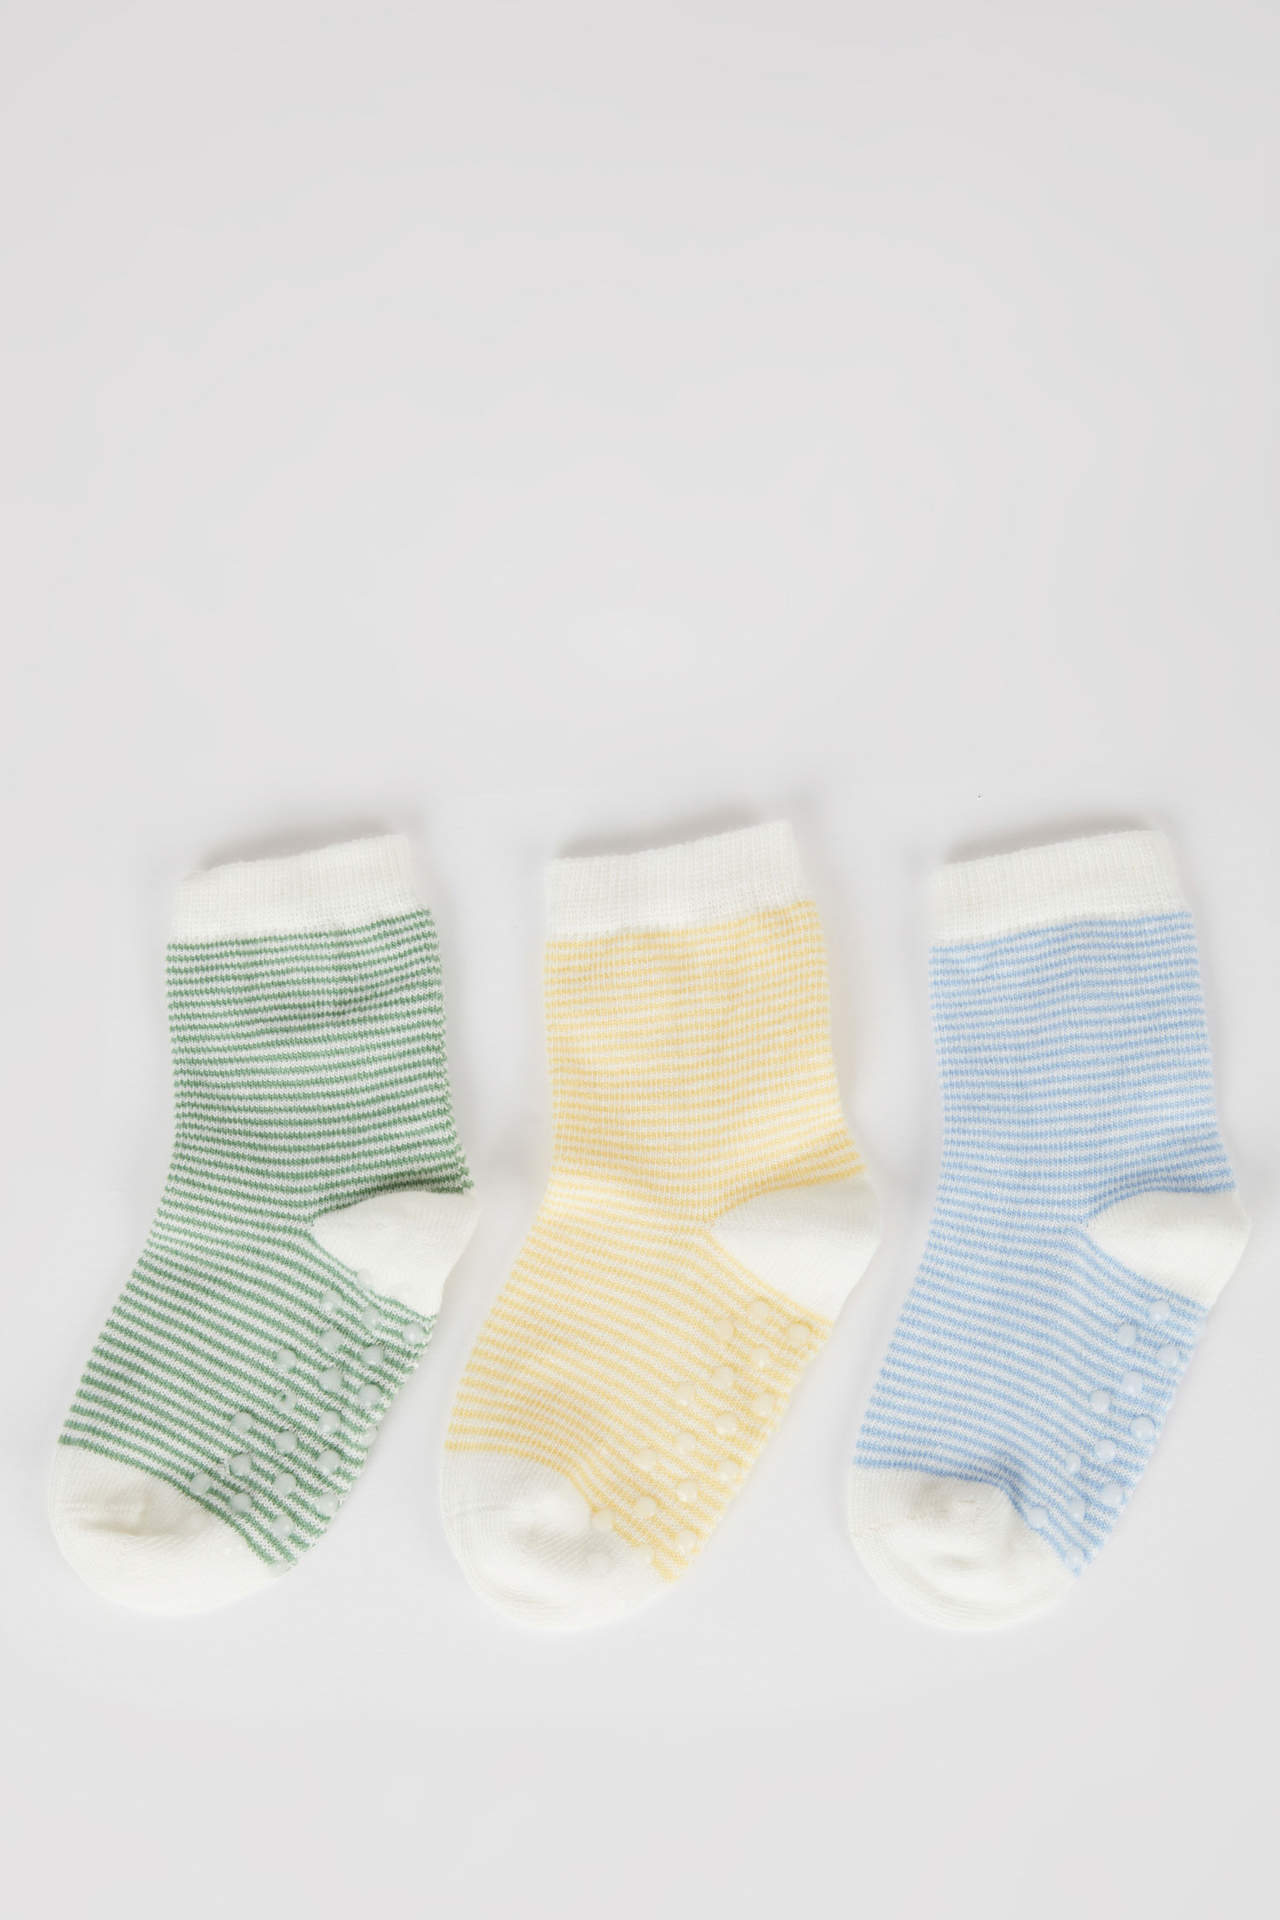 DEFACTO Baby Boy 3 Piece Cotton Long Socks